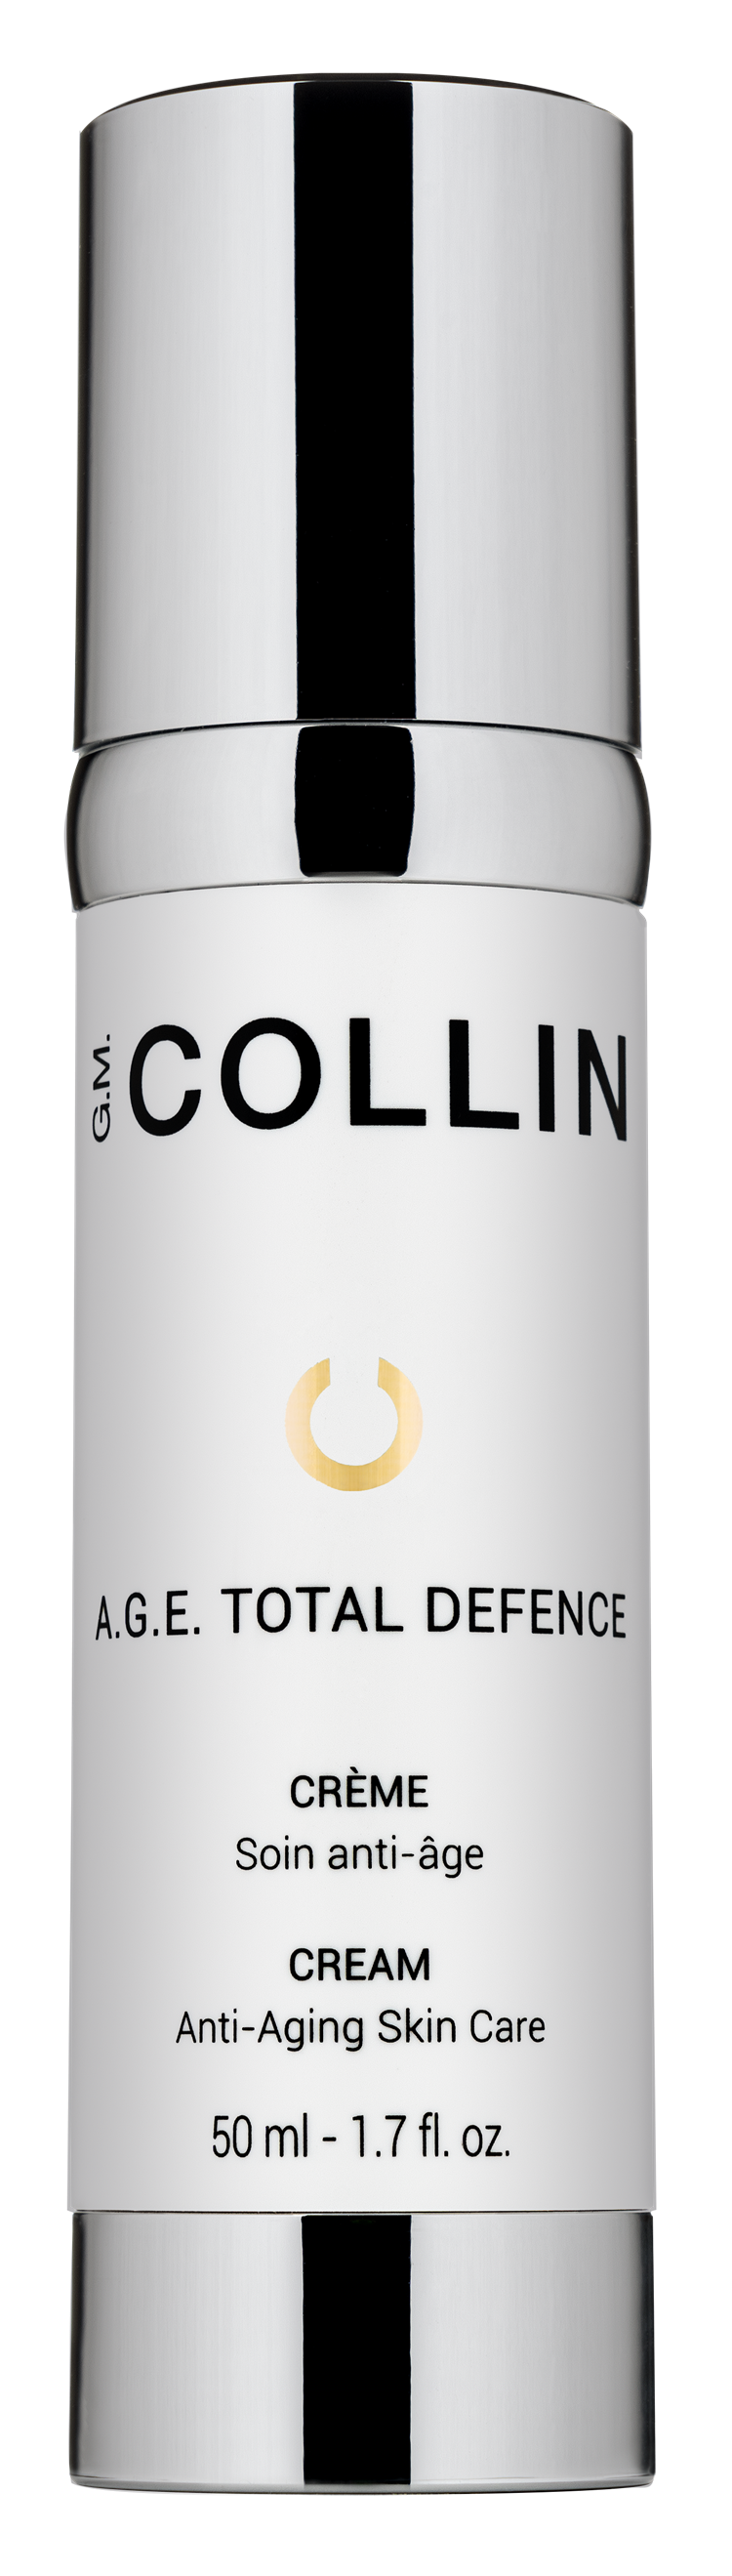 a.g.e total defence cream gm collin